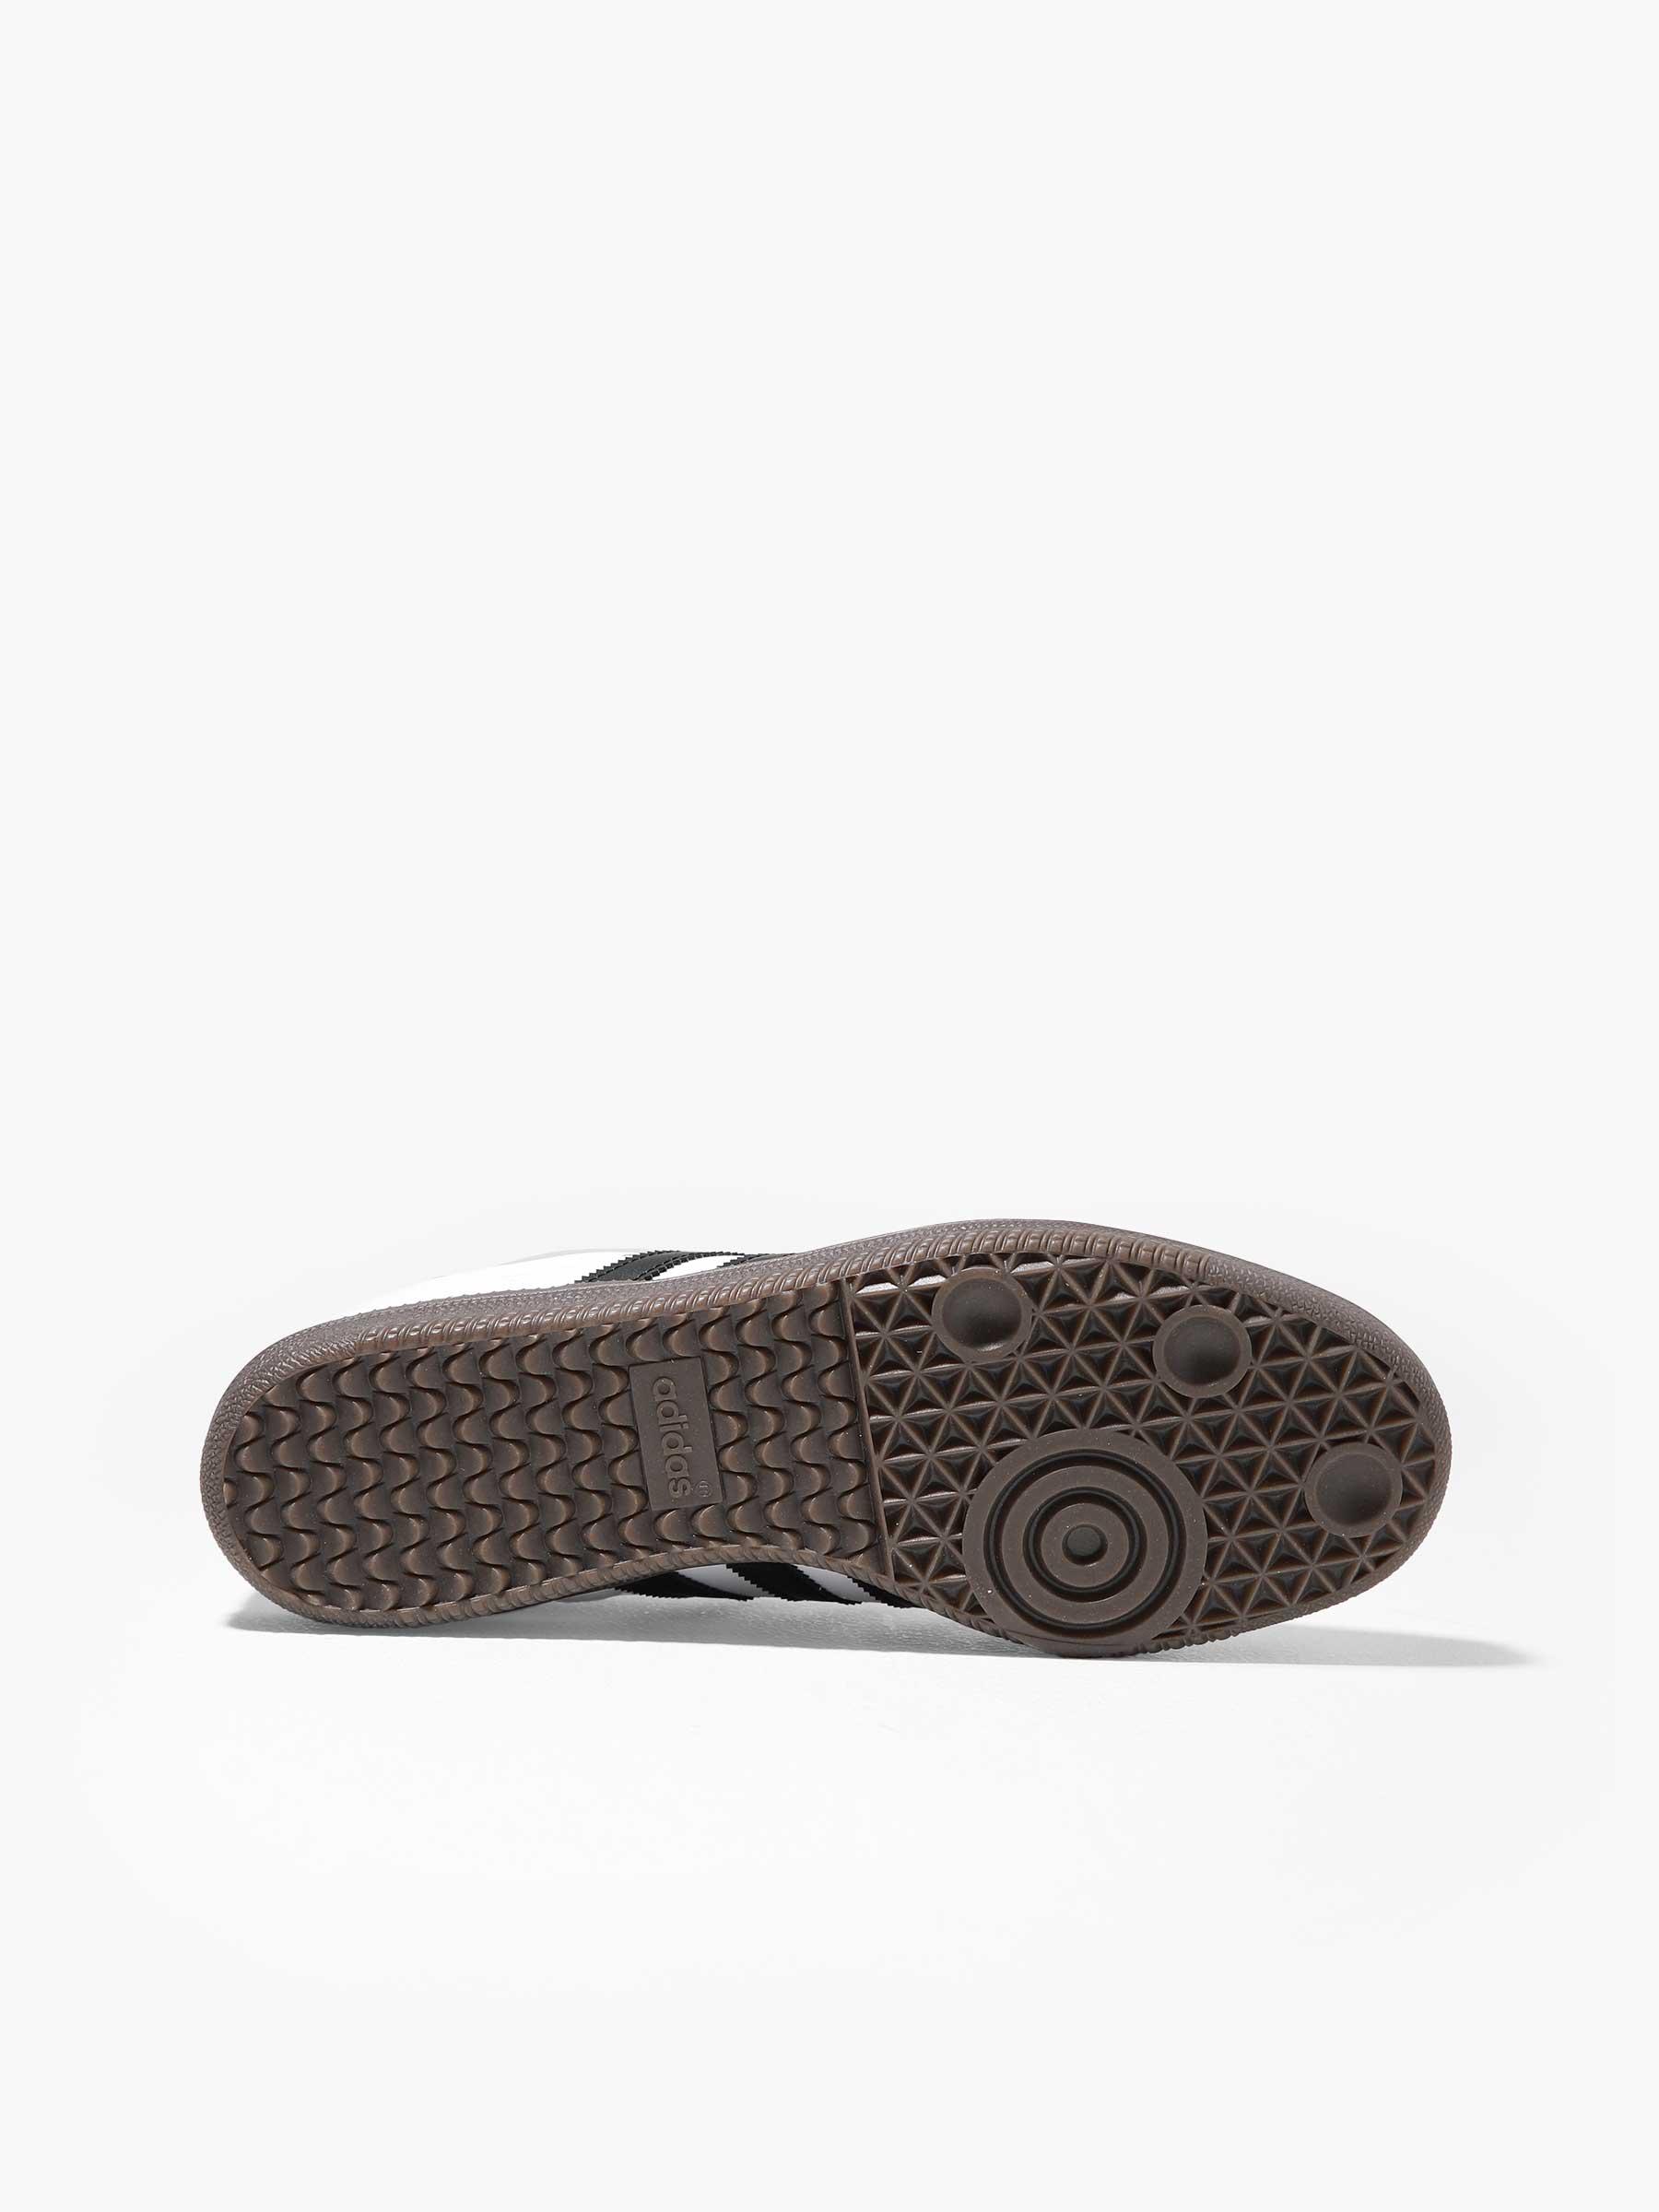 Samba OG Footwear White Core Black Clear Granite B75806